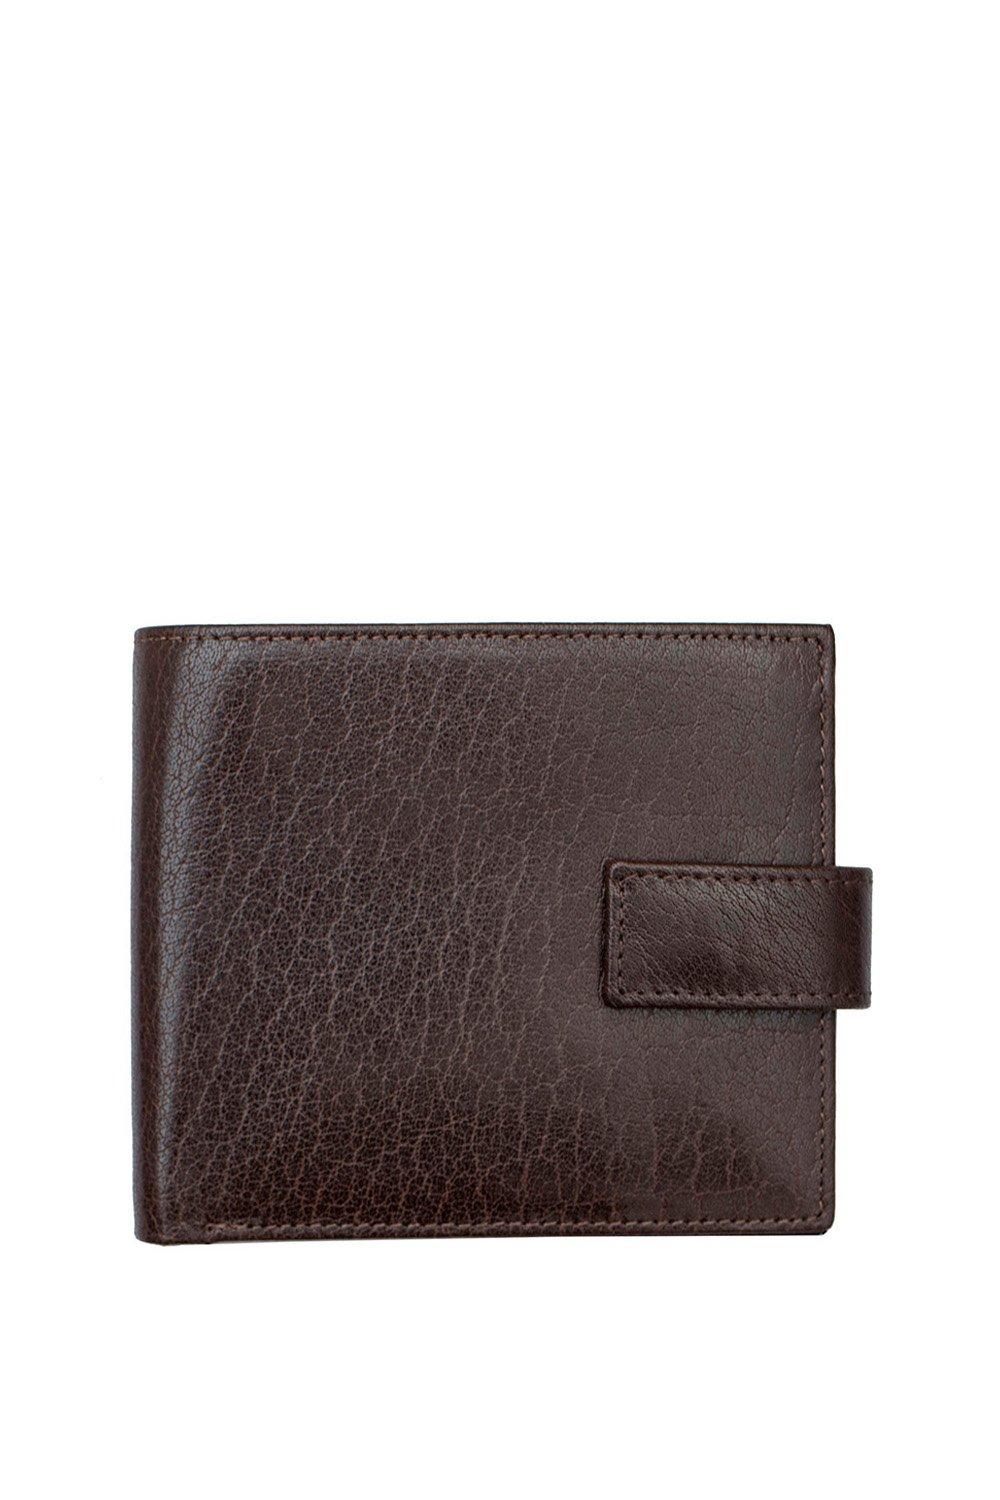 Кожаный кошелек двойного сложения 'Ricco' PRIMEHIDE, коричневый